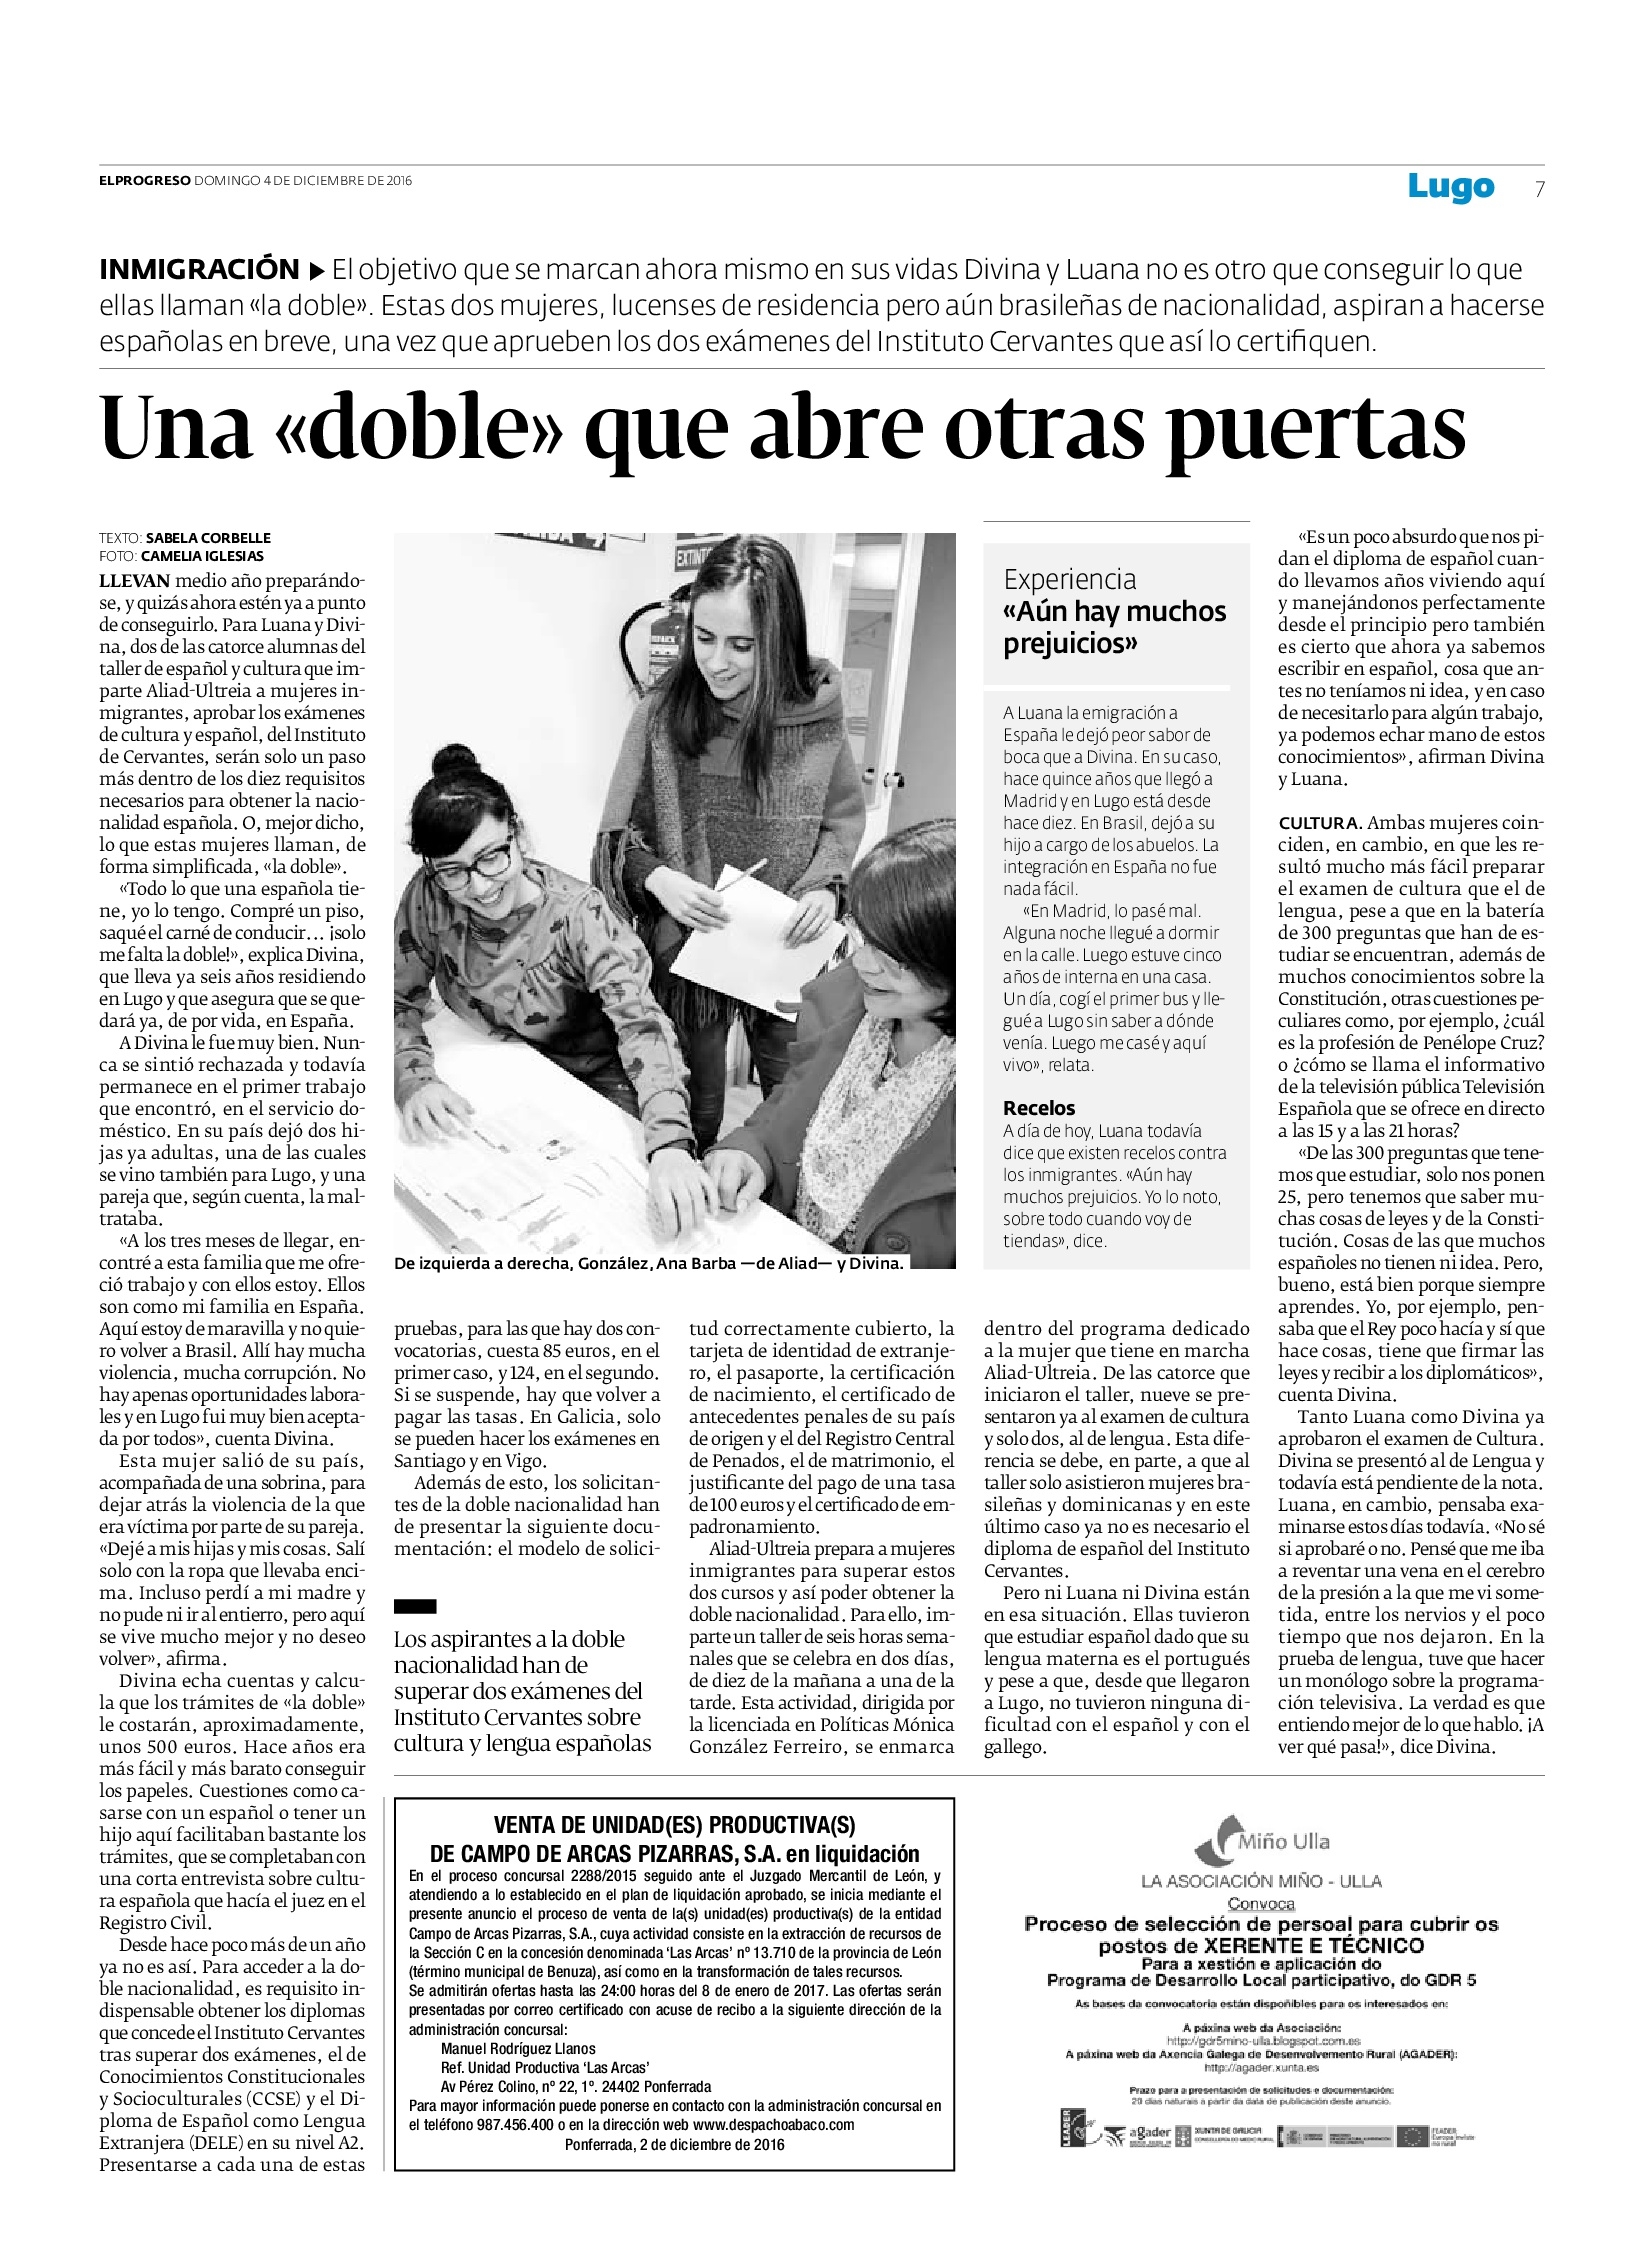 El Progreso publica un reportaje sobre los cursos de castellano y cultura española.